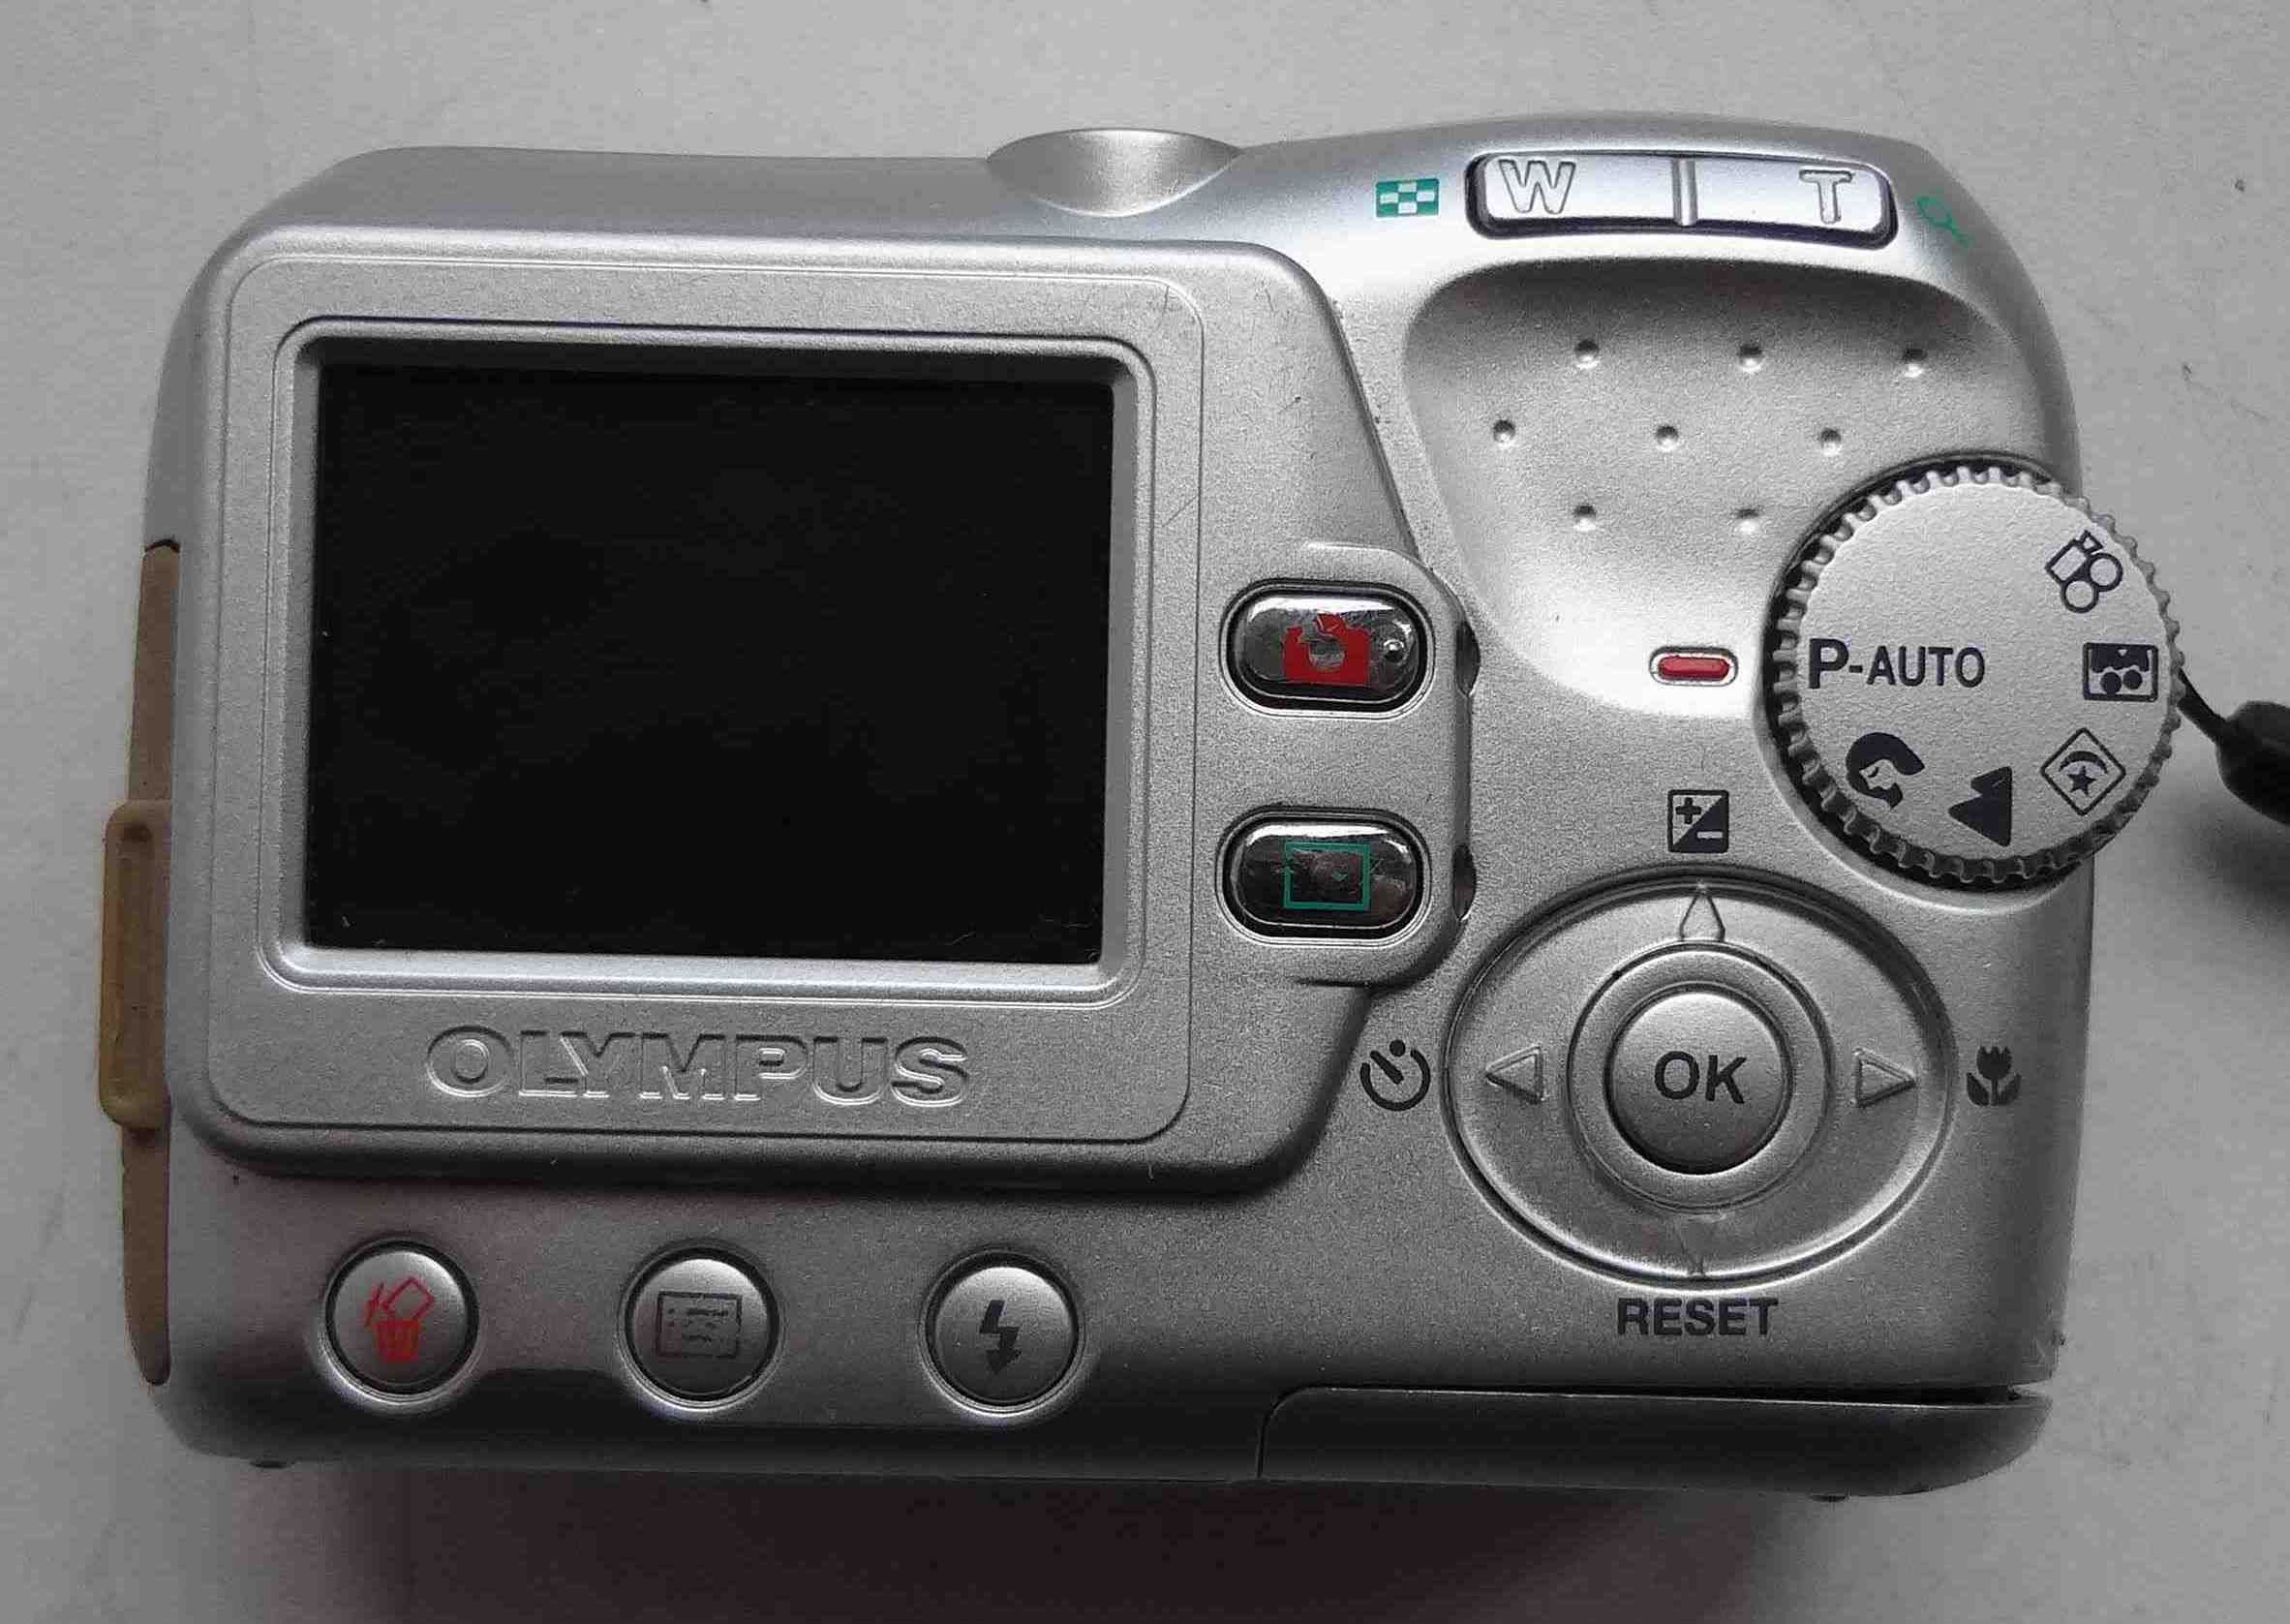 Фотоаппарат Olympus CAMEDIA C-370 ZOOM